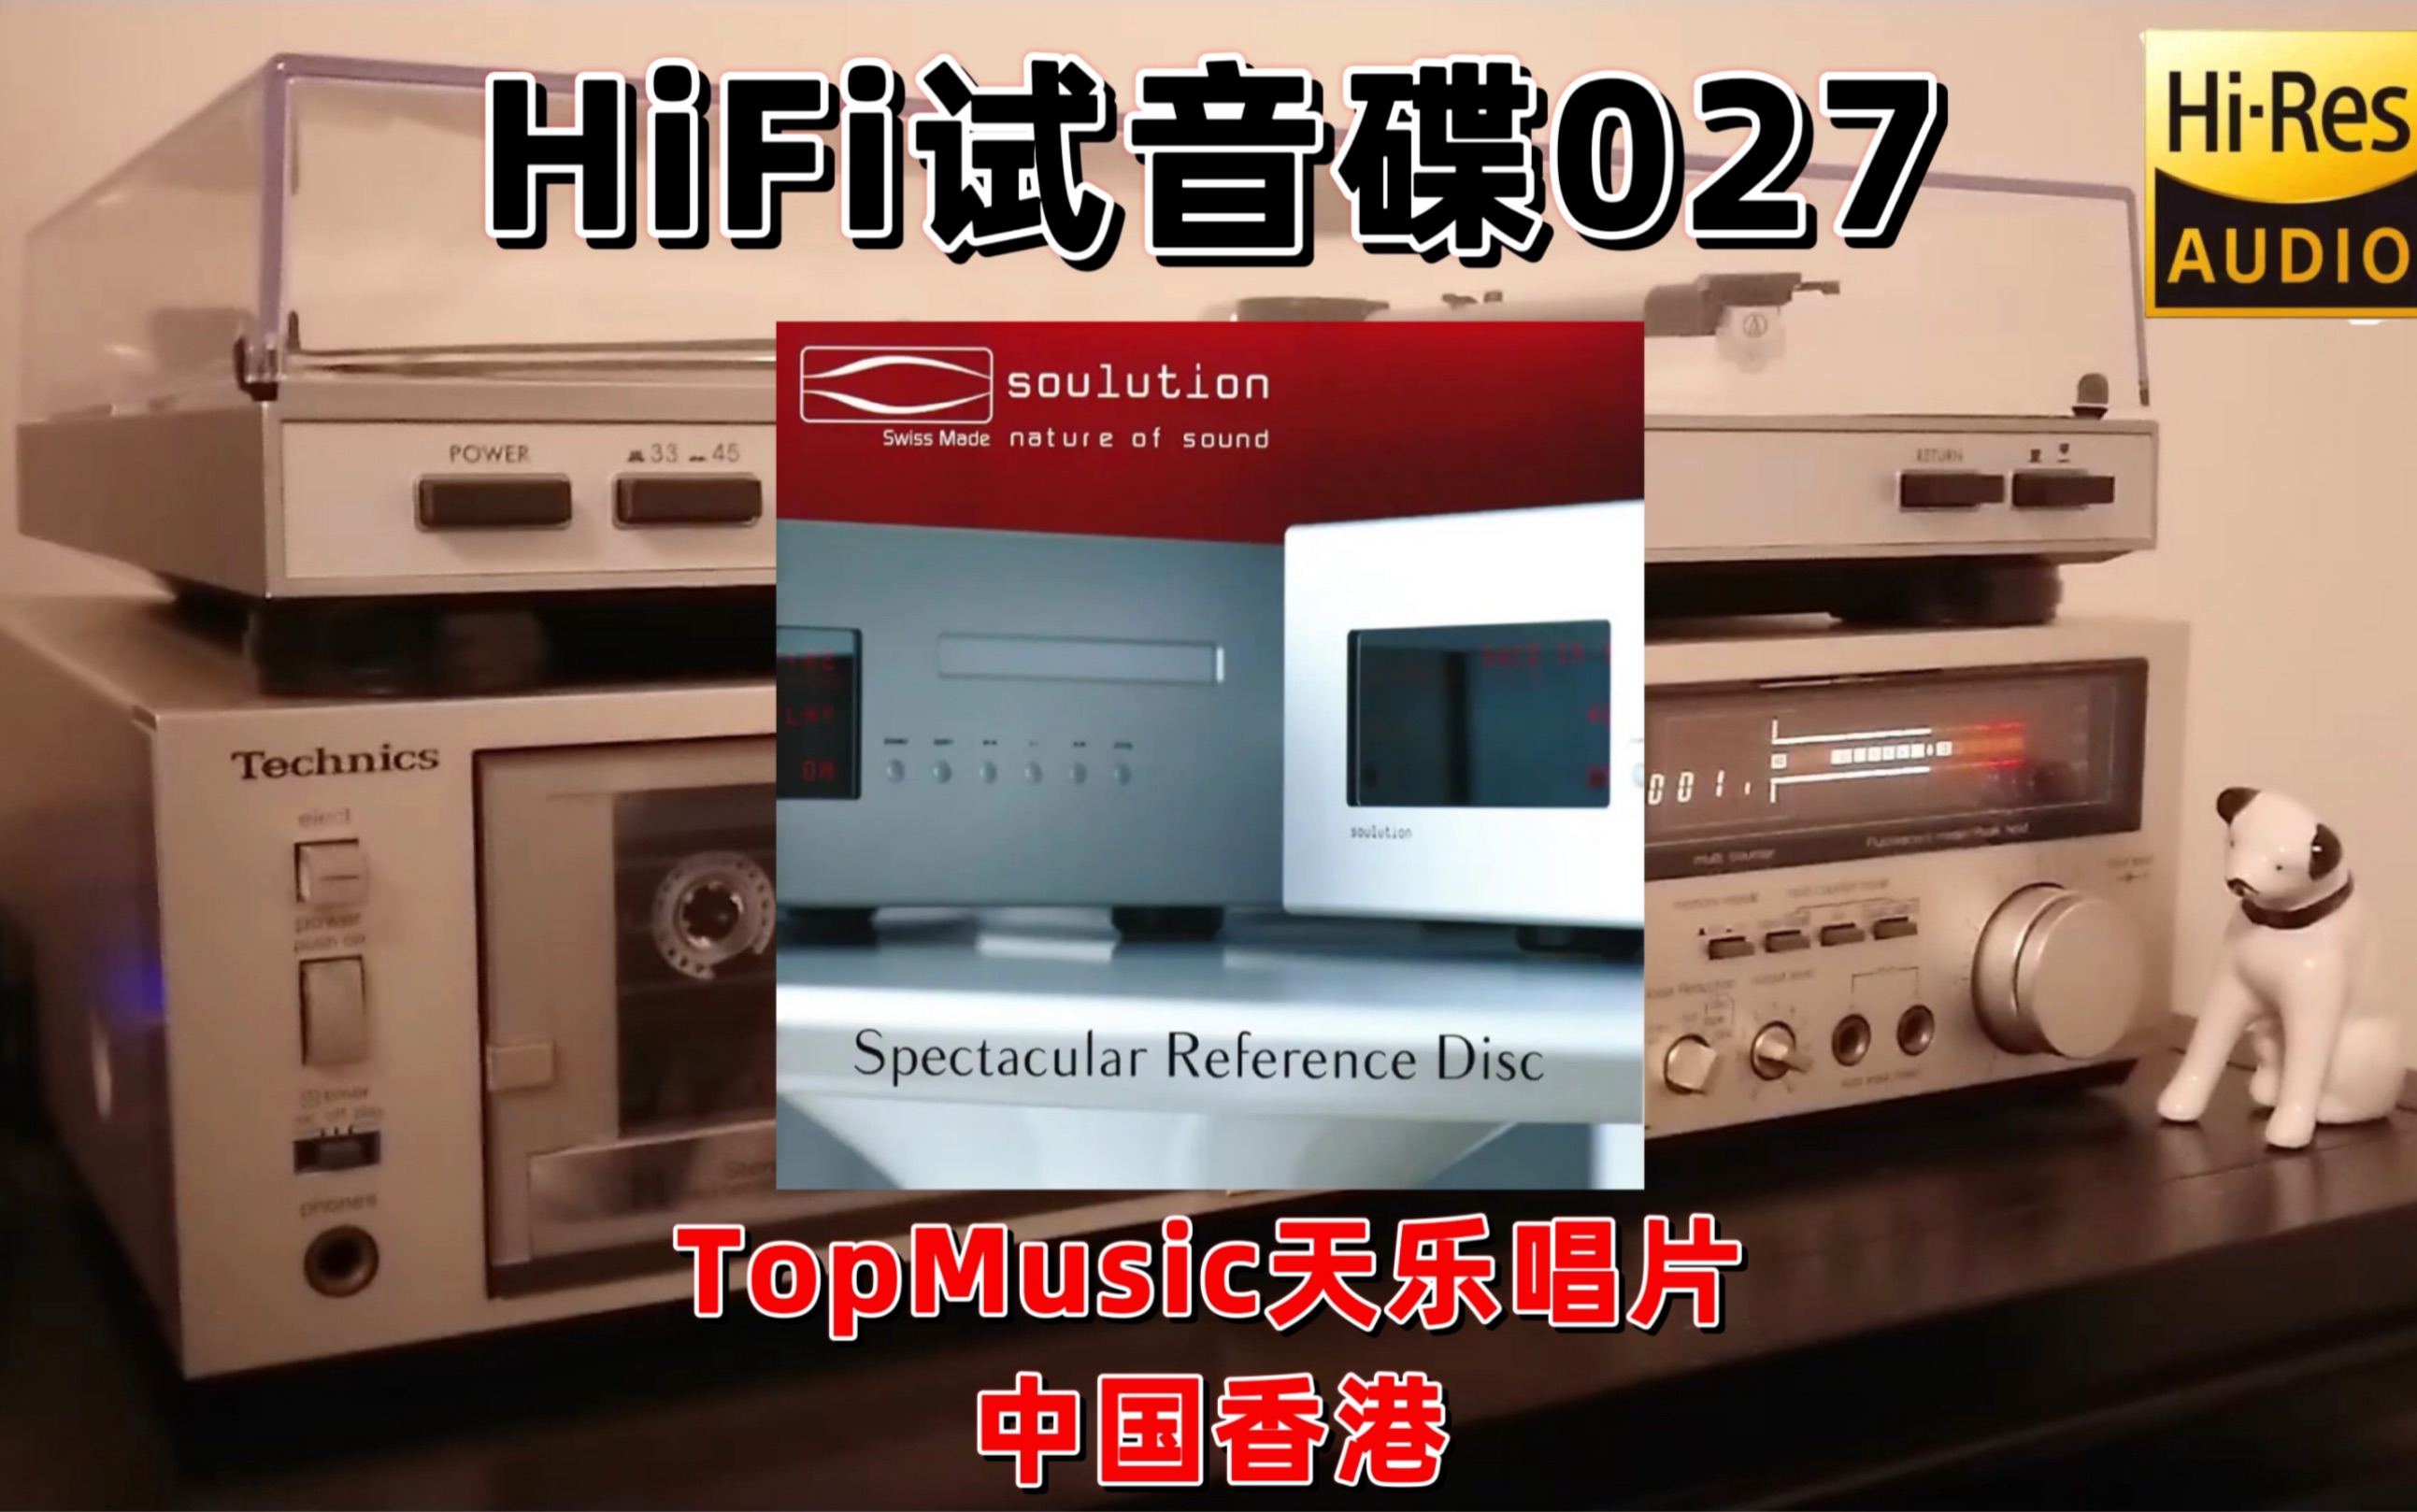 [图]#HiFi试音碟027#瑞士登峰试音天碟 2019 发烧碟 测试碟 煲机碟 试机碟